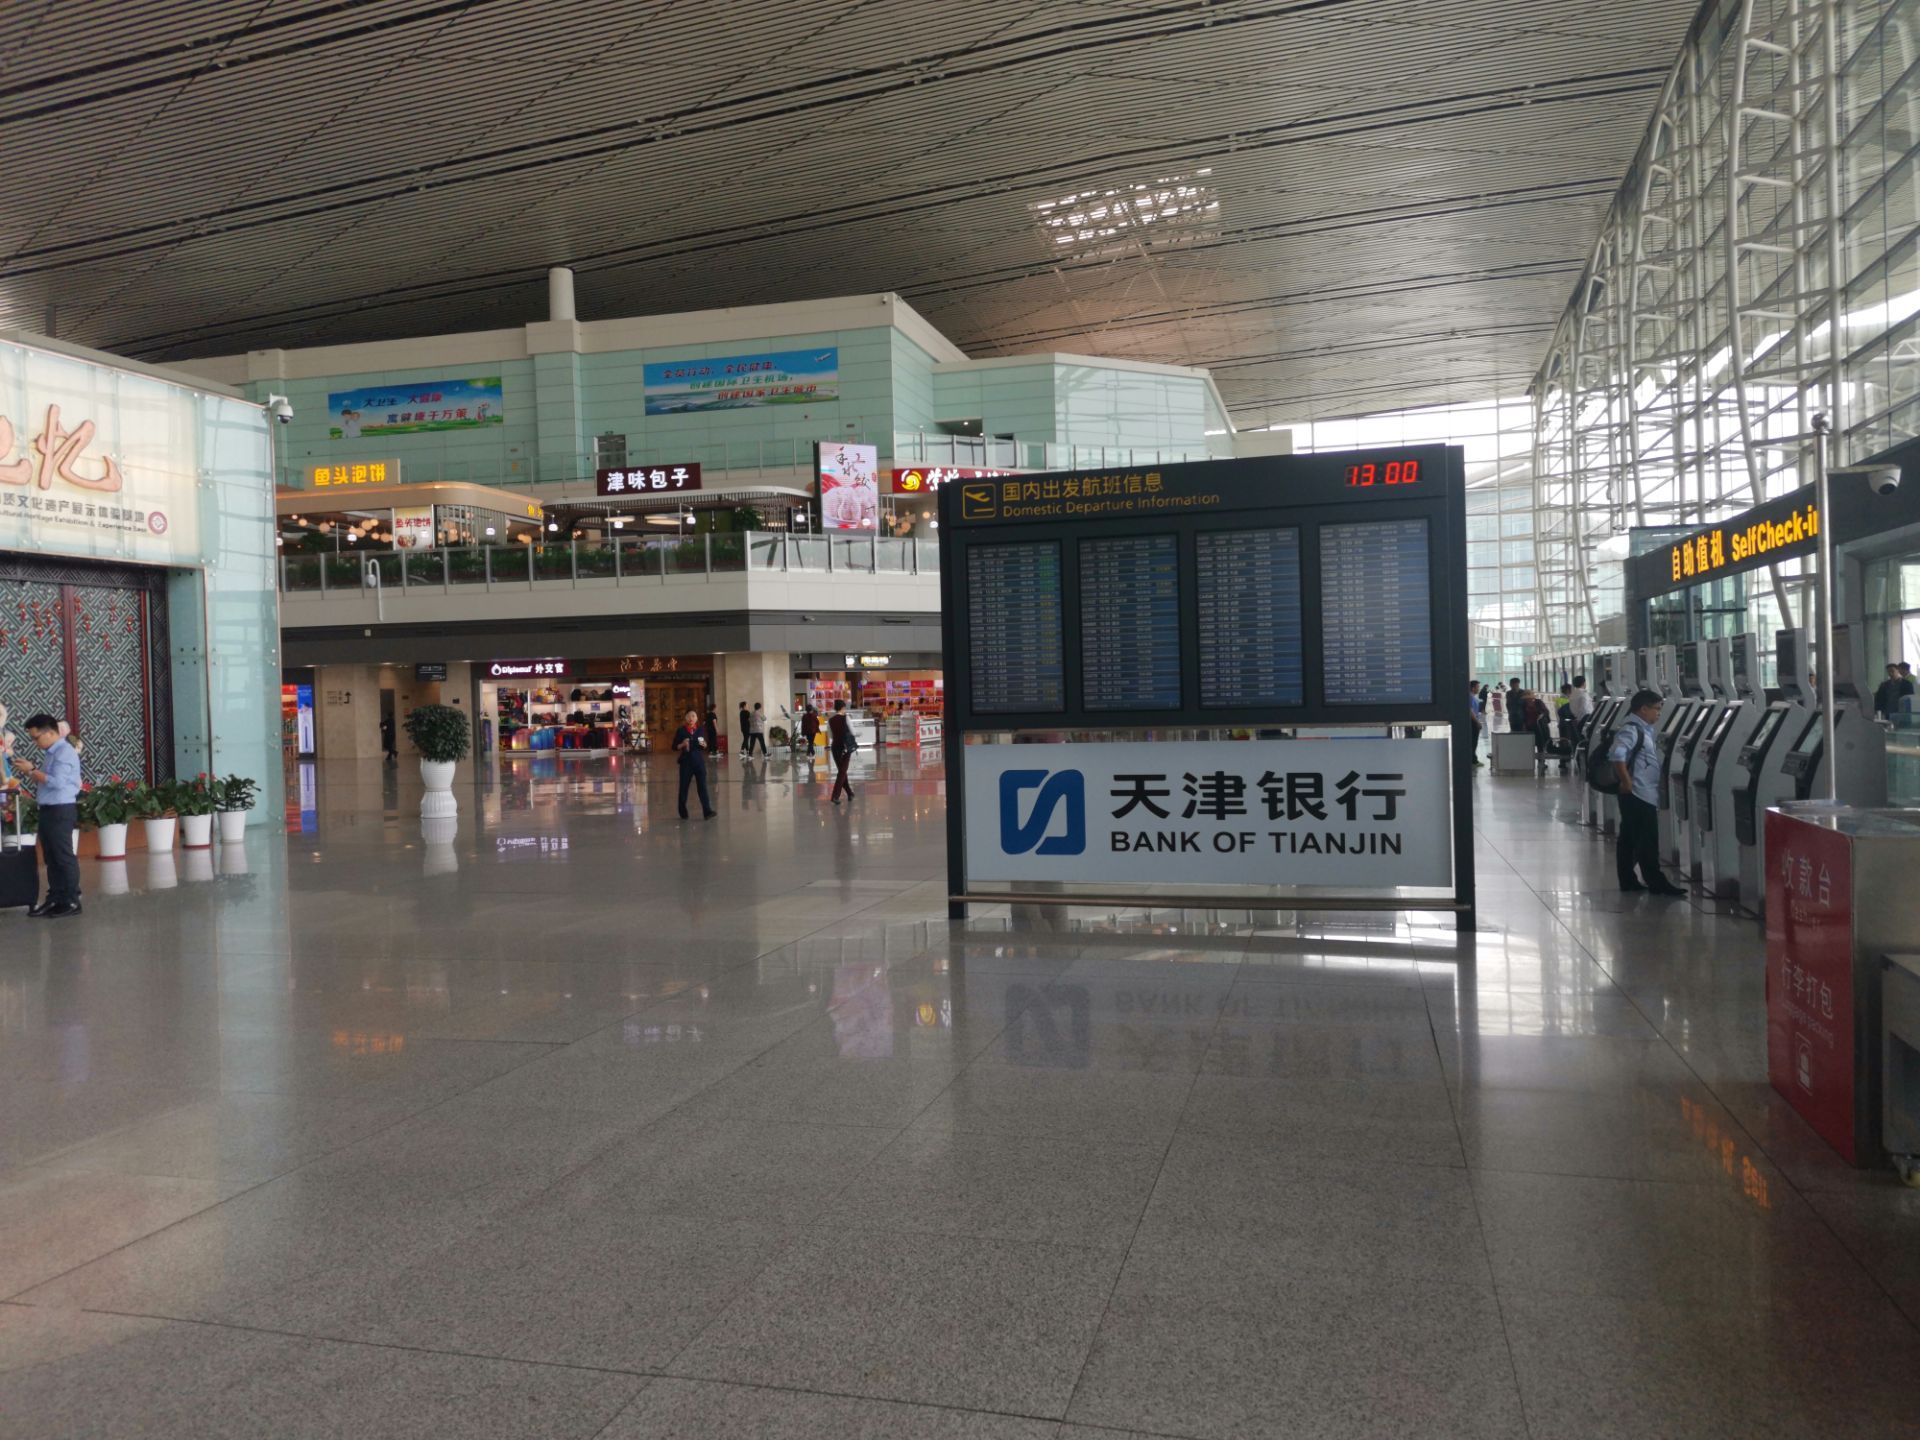 天津滨海机场图片_天津机场t2航站楼平面图 - 电影天堂